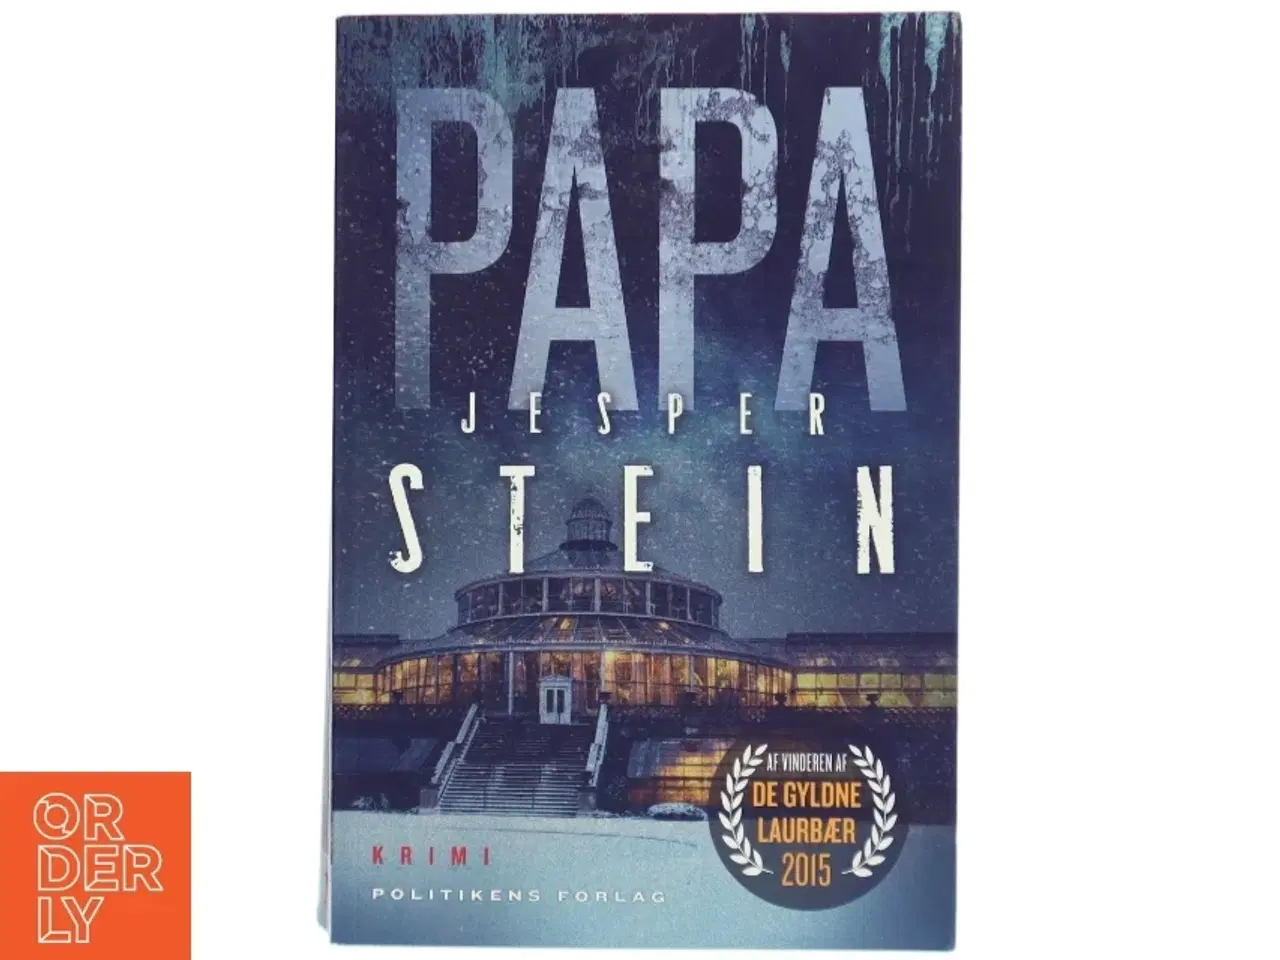 Billede 1 - 'Papa: krimi' af Jesper Stein (bog)